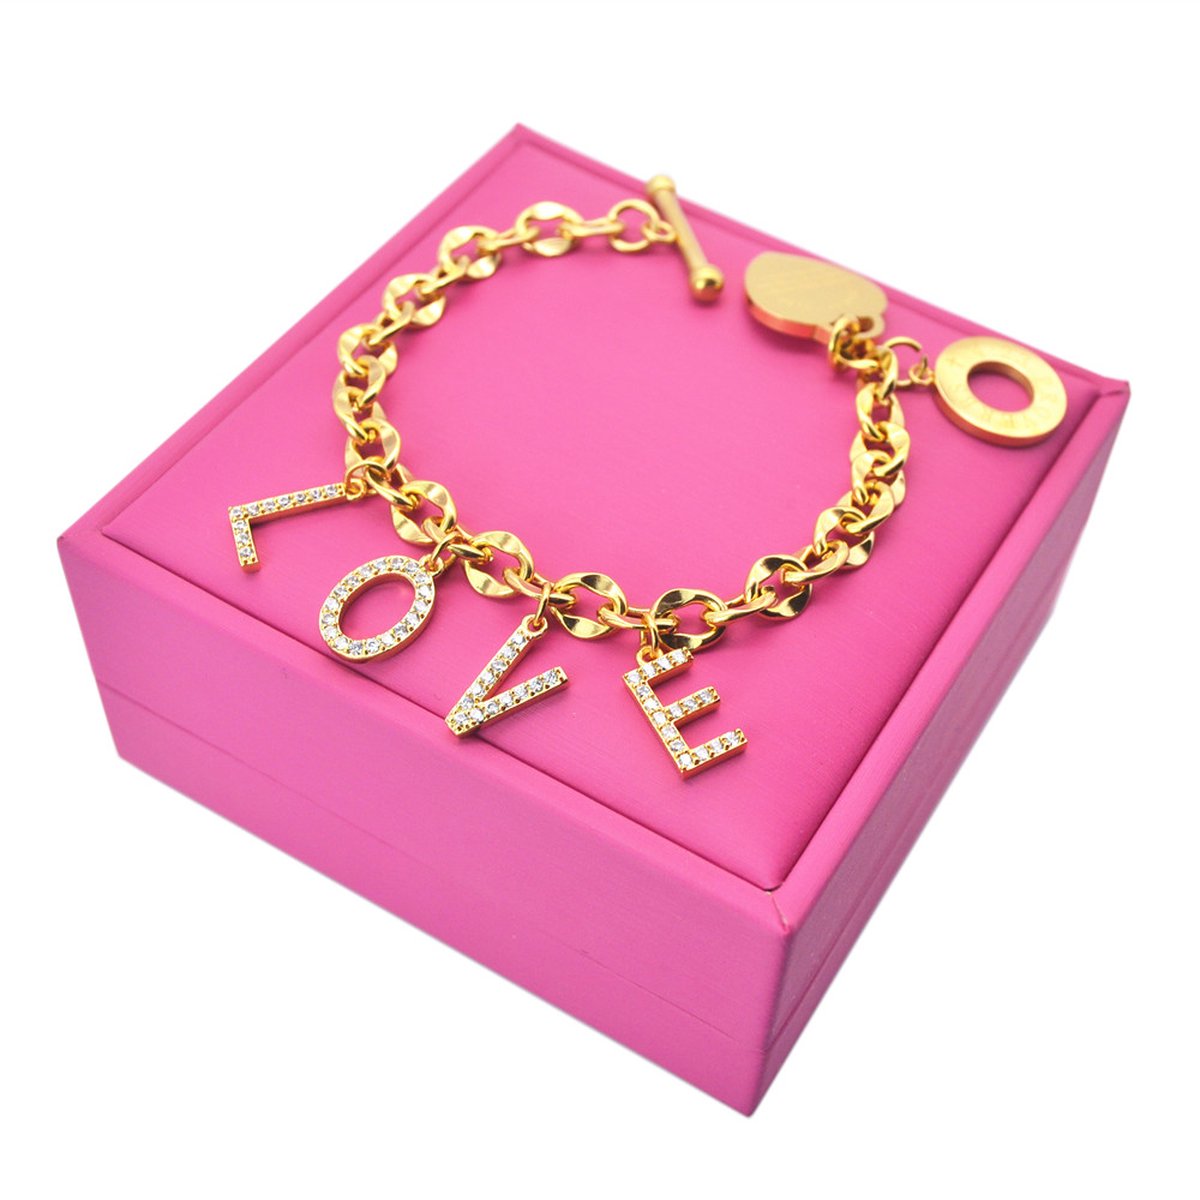 Nieuwe Design Love Goud Armband met diamanten voor Haar met geschenkzakje, Romantisch Valentijn cadeau